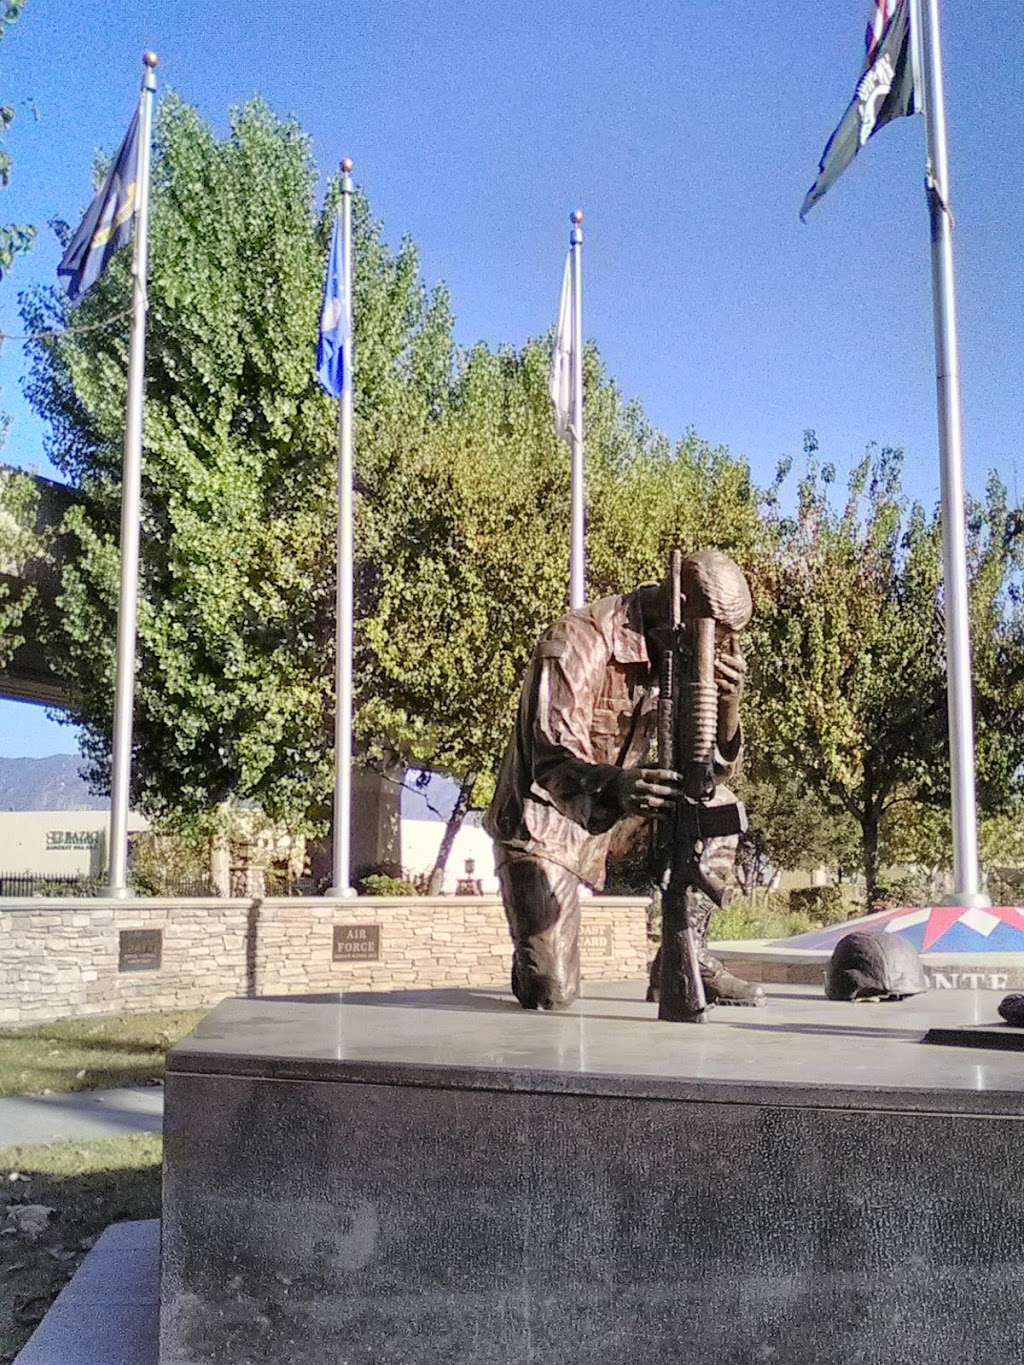 Veterans Memorial Park | 8575024915, El Monte, CA 91731, USA